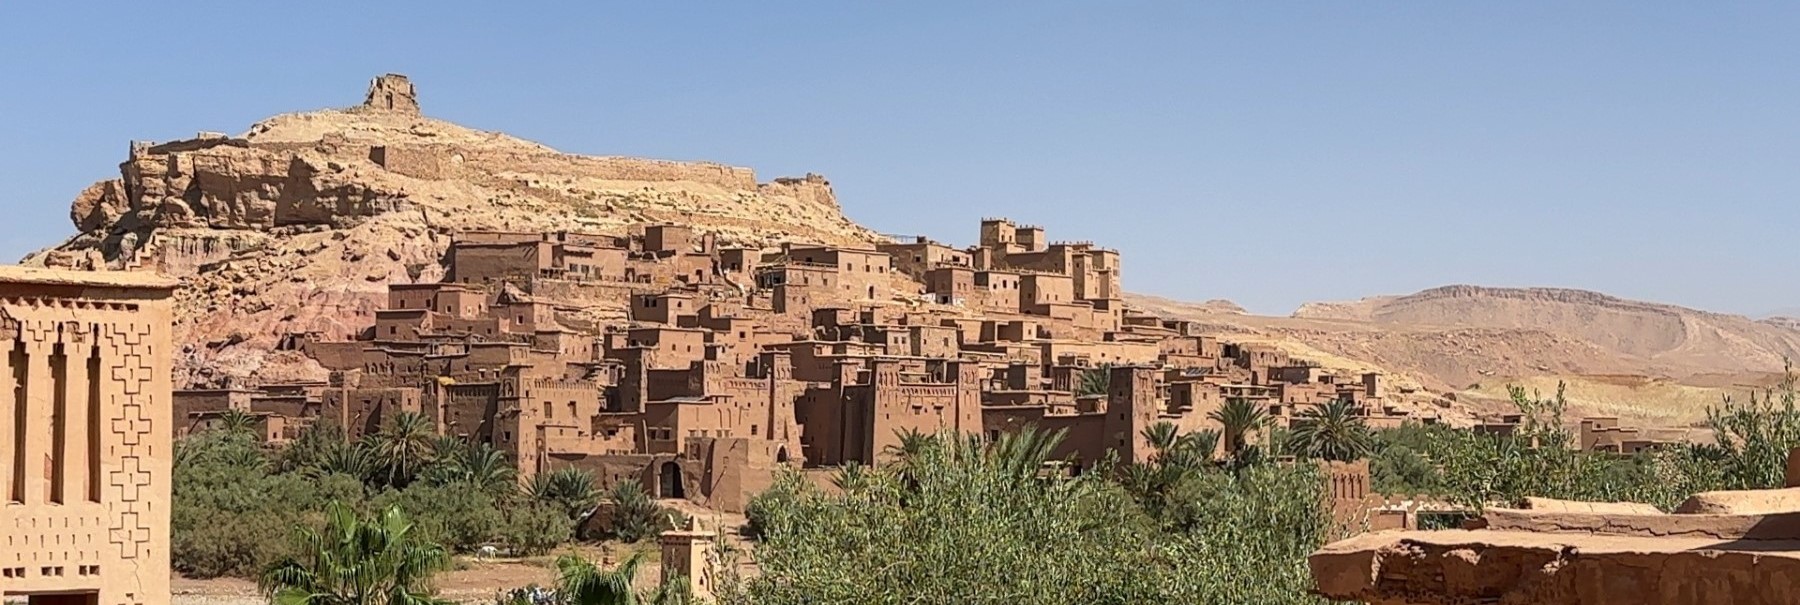 MOROCCO REVIEW|モロッコ お客様の声